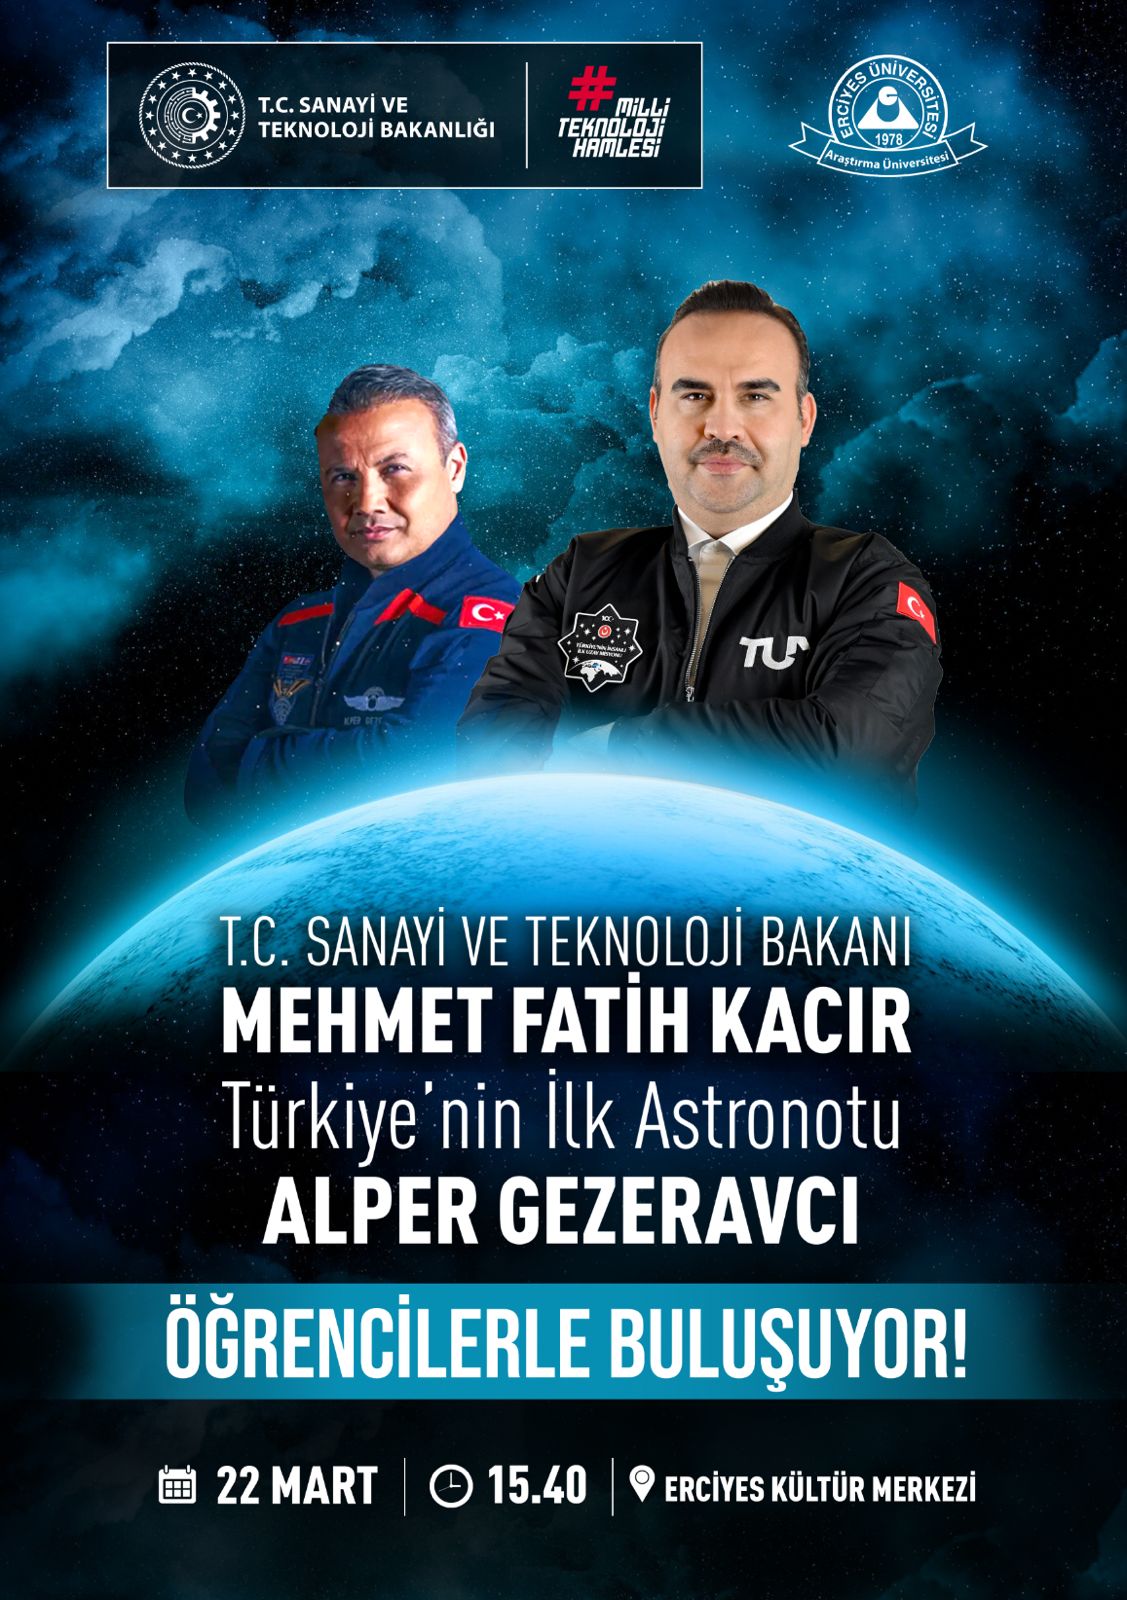 TÜRKİYE'NİN İLK ASTRONOTU YARIN KAYSERİ'DE 